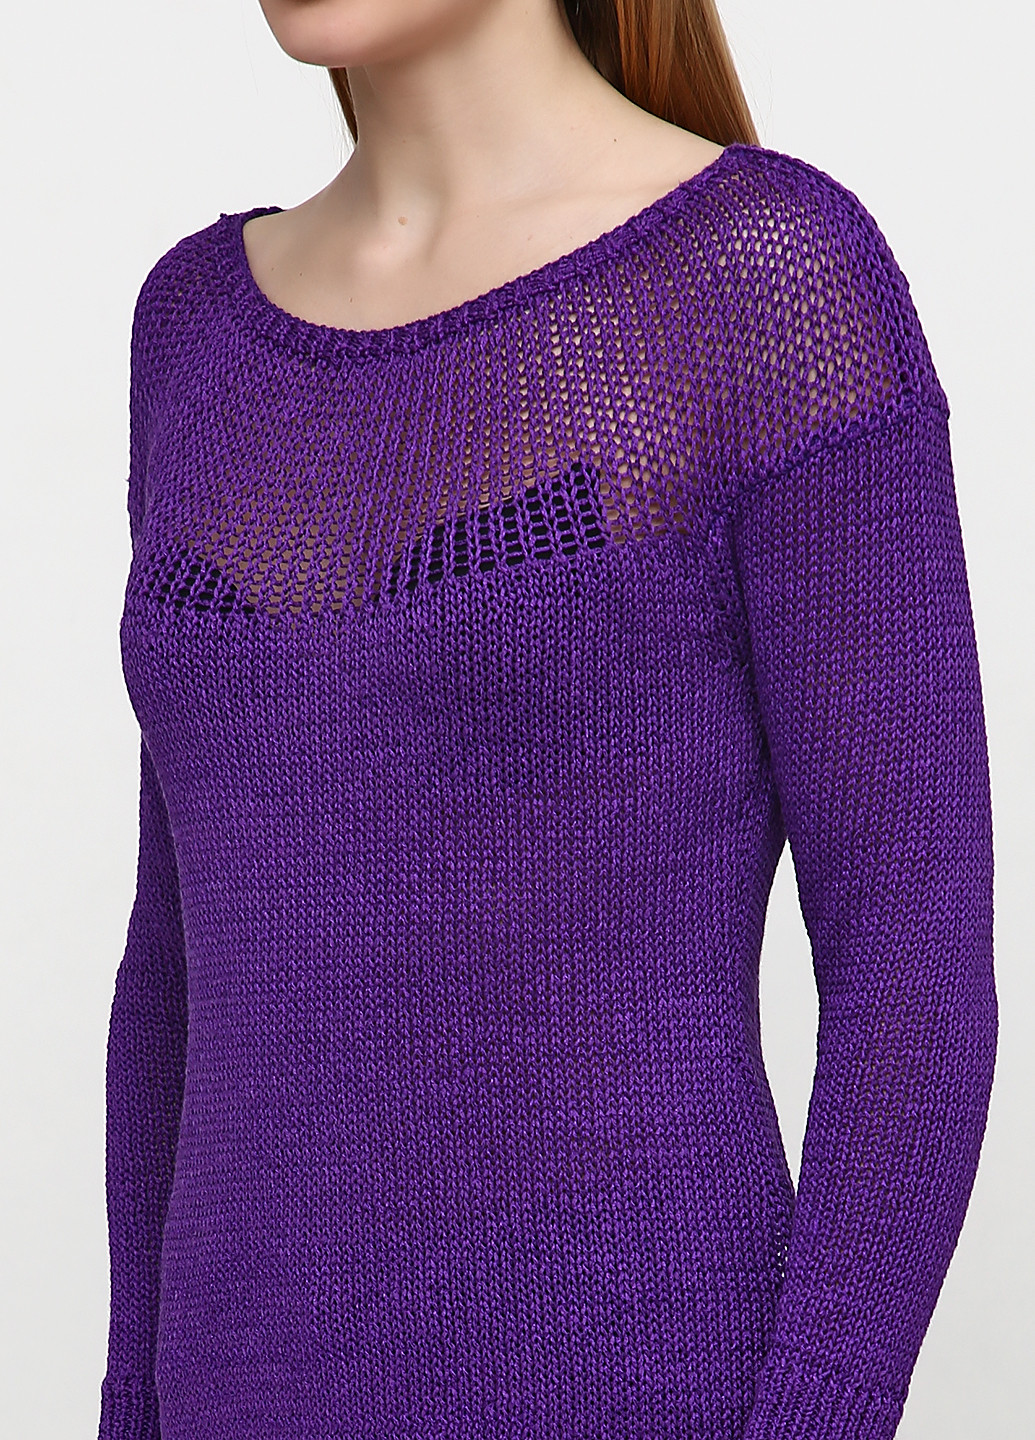 Фиолетовый демисезонный джемпер джемпер Ralph Lauren